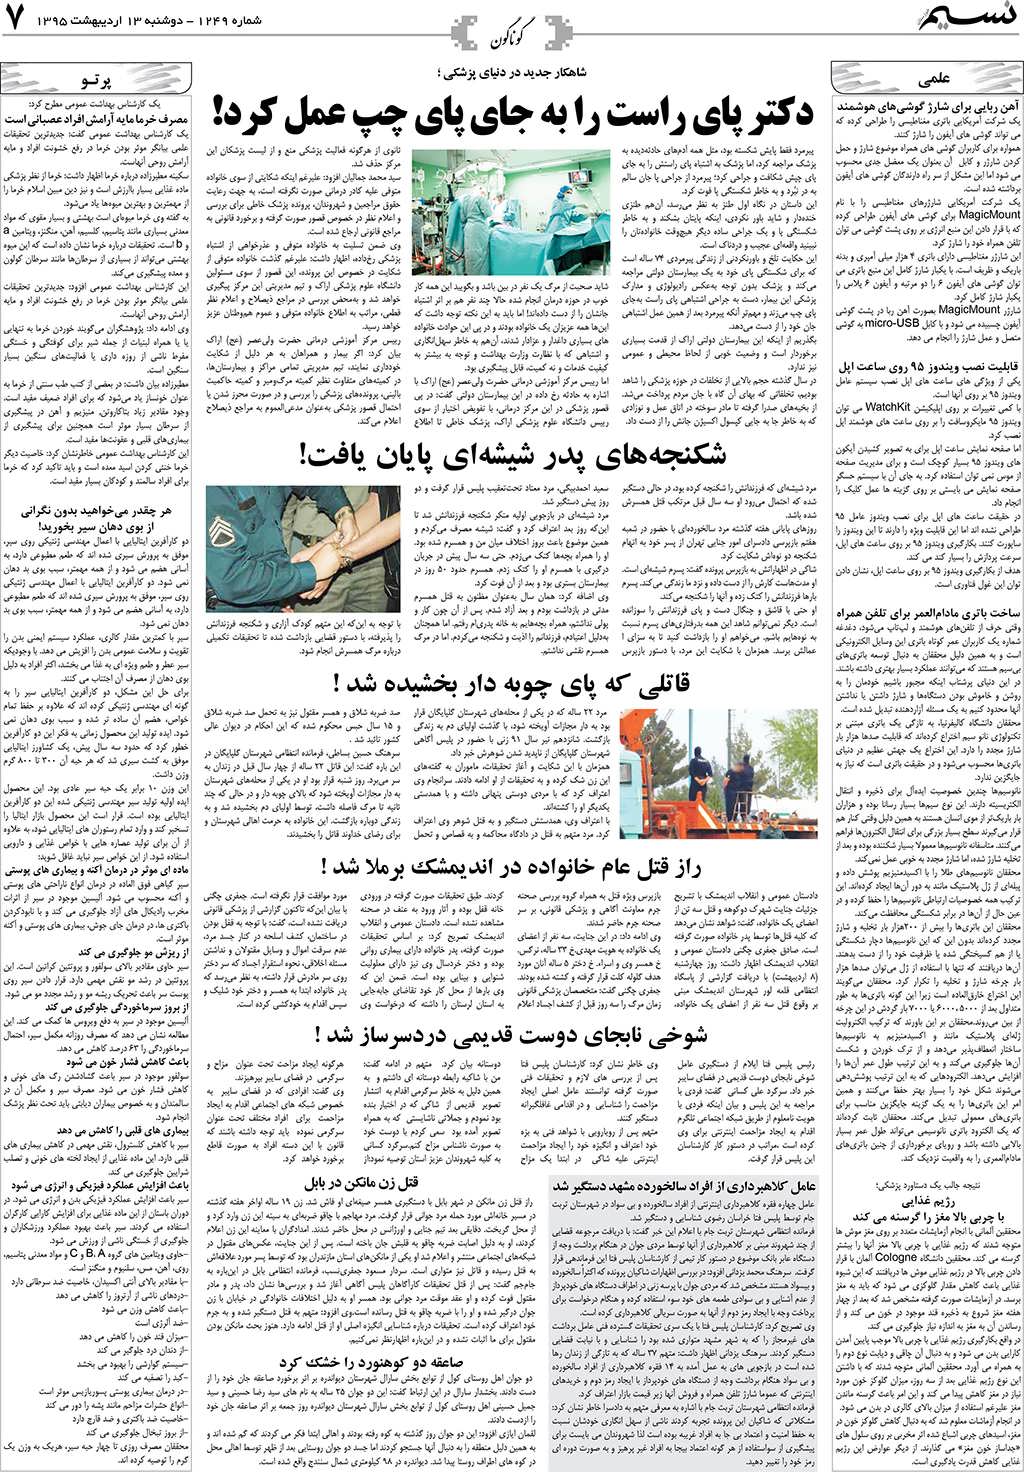 صفحه گوناگون روزنامه نسیم شماره 1249